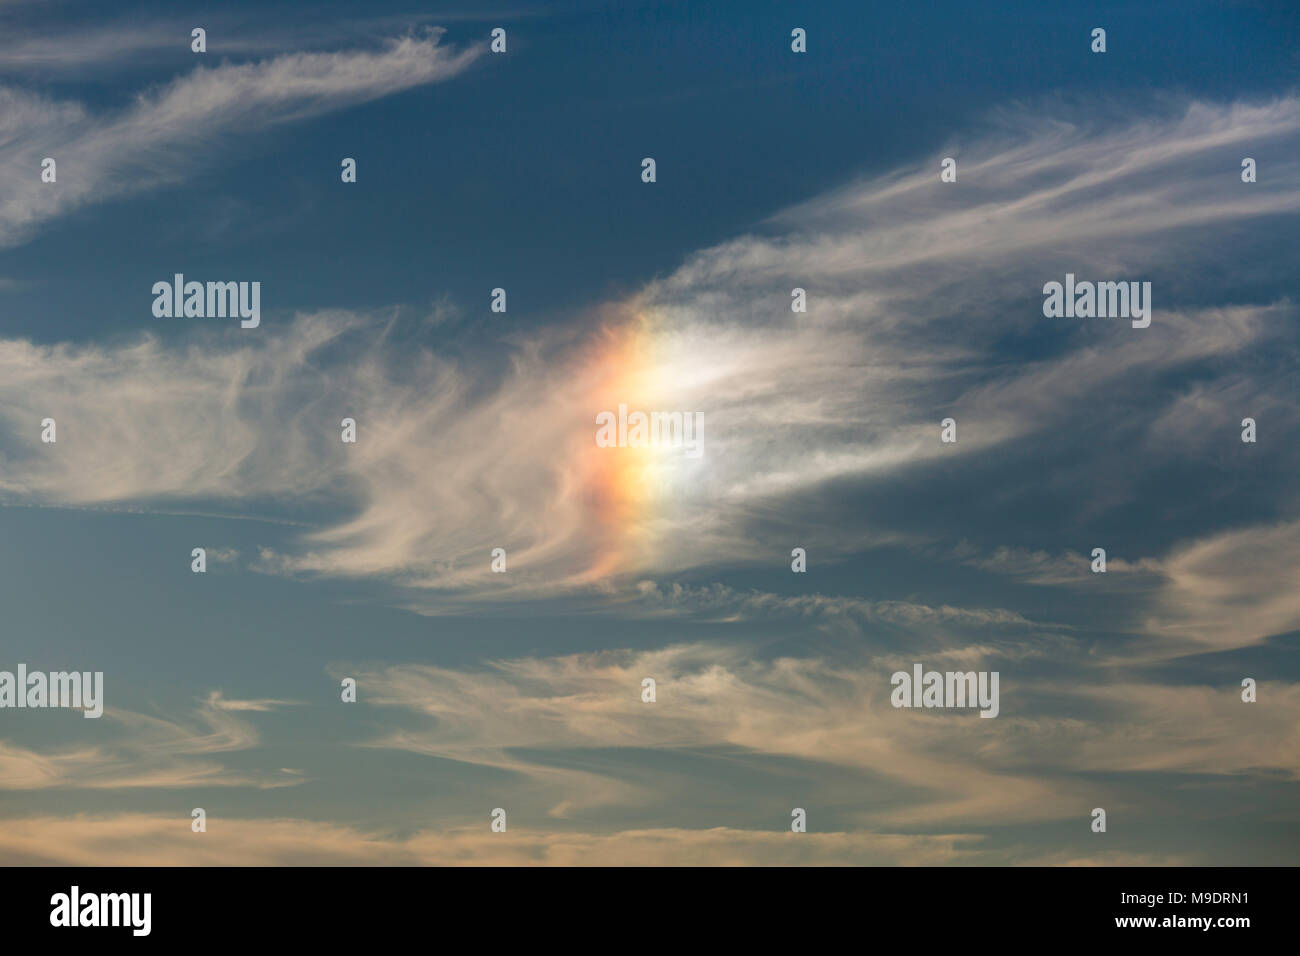 Innenbeleuchtung -Fotos und -Bildmaterial in hoher Auflösung – Alamy